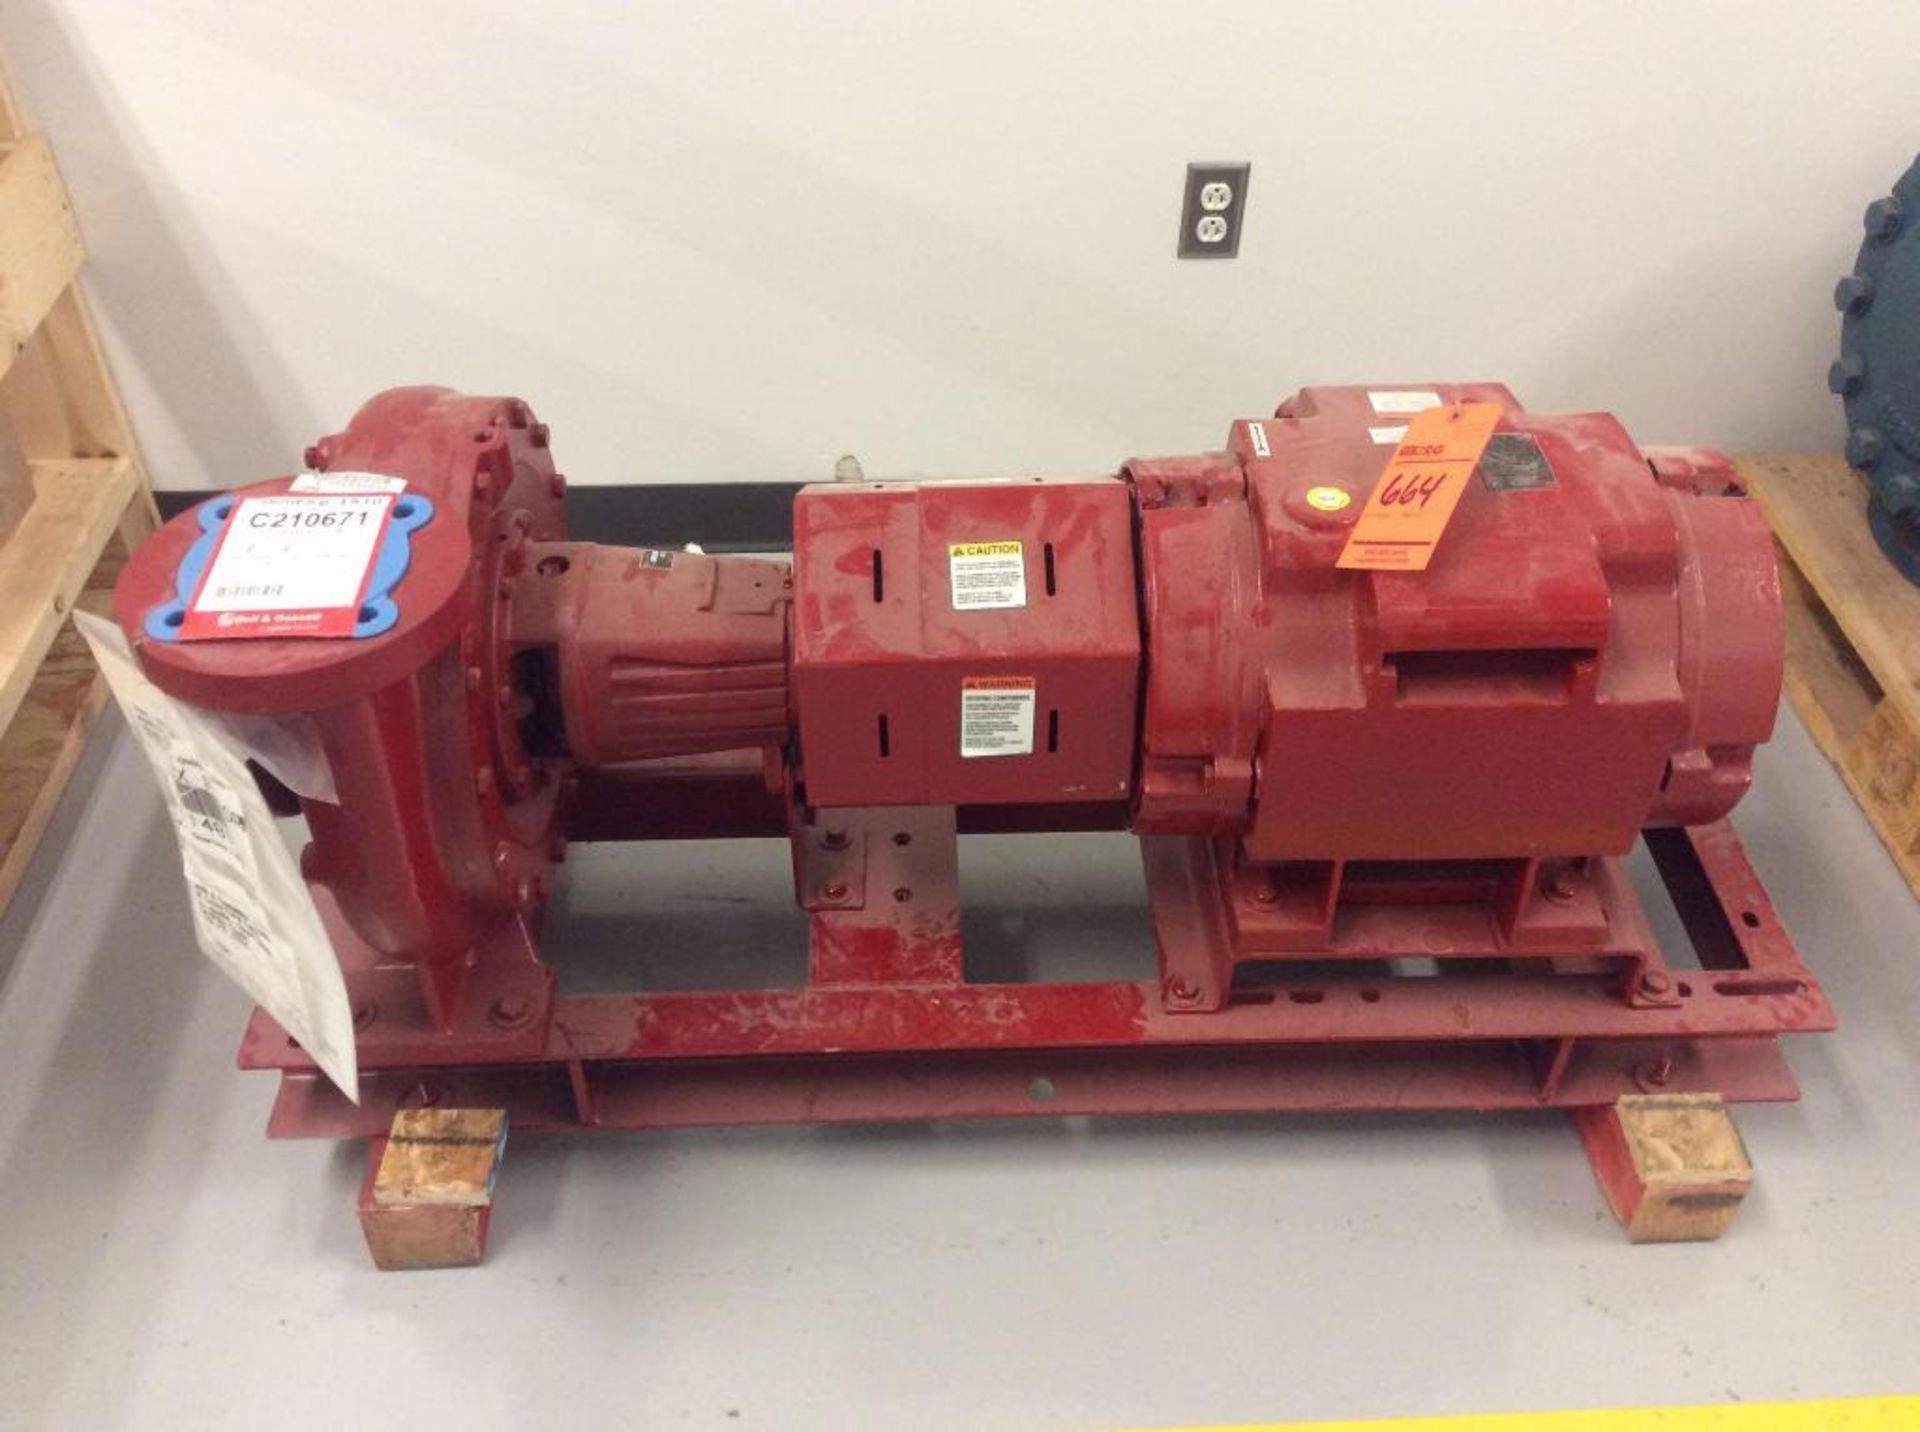 Bell and Gossett pump set, 25 hp, 1800 rpm, 512 gal per minute